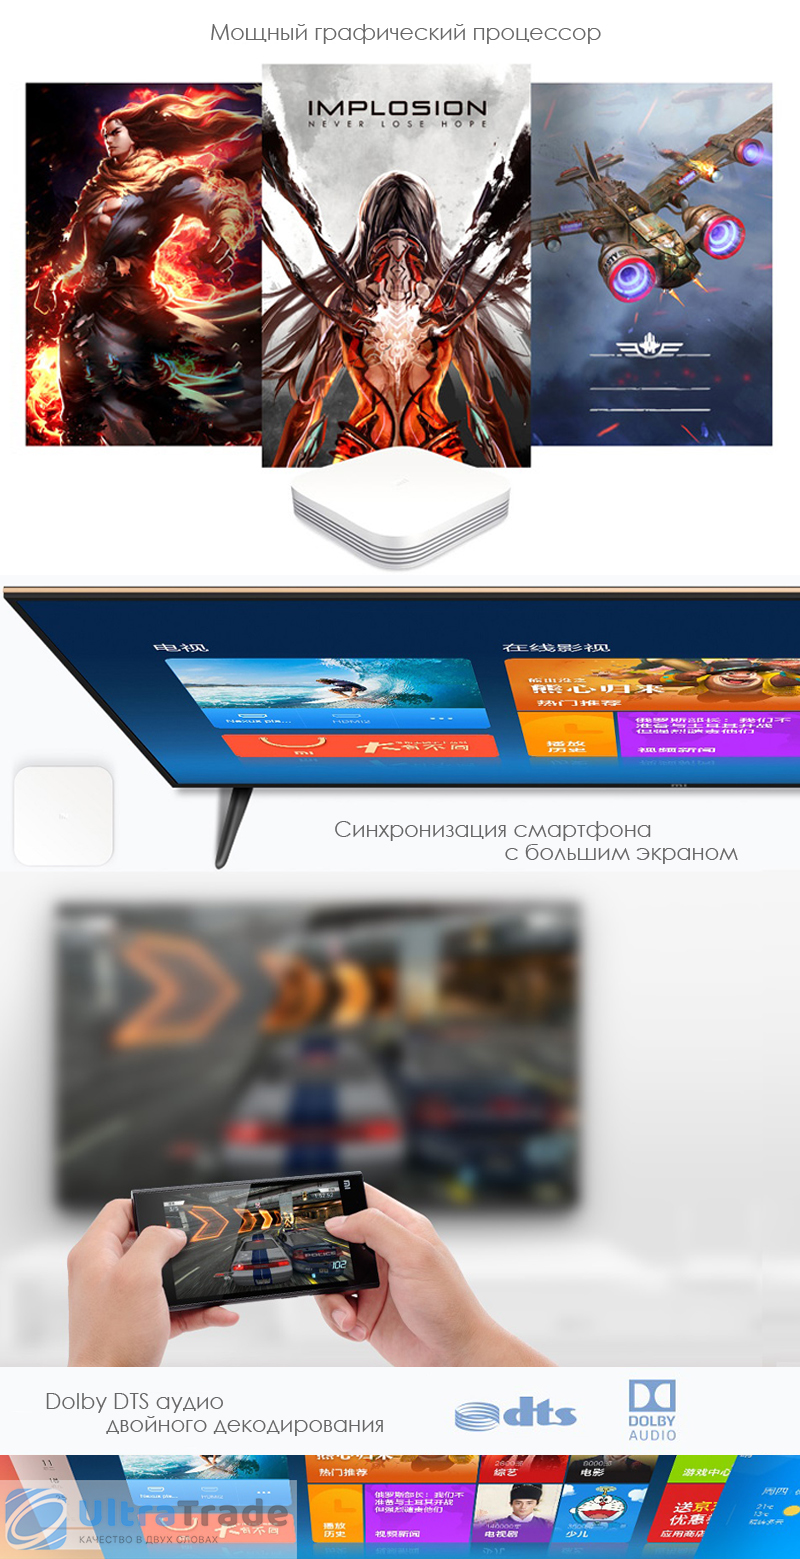 Медиаплеер Xiaomi Mi Box 3 Enhanced Edition (Русское меню)